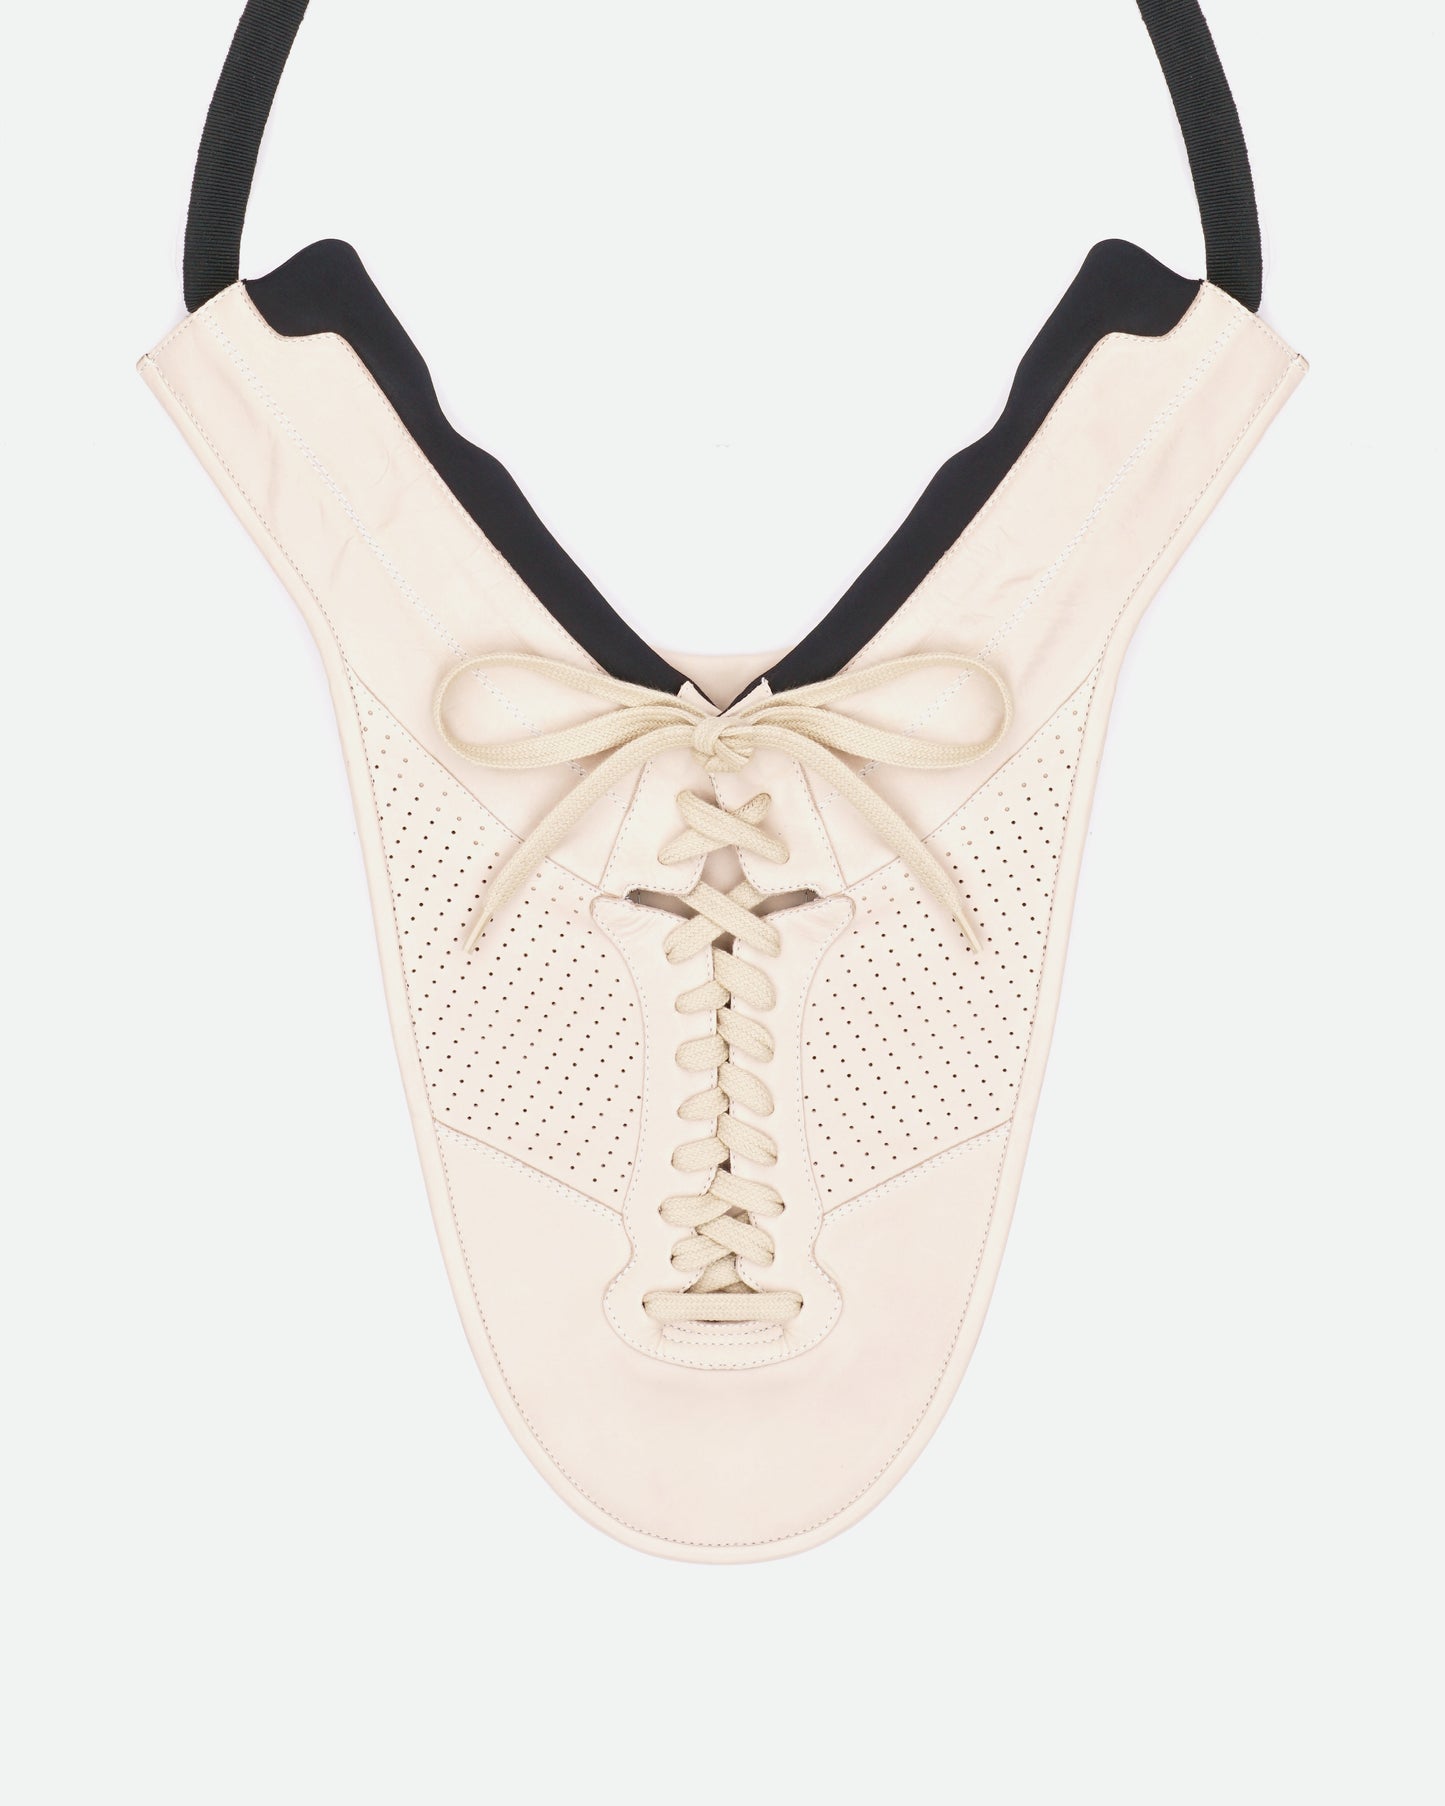 Maison Margiela AW14 Artisanal Shoe Bib Necklace